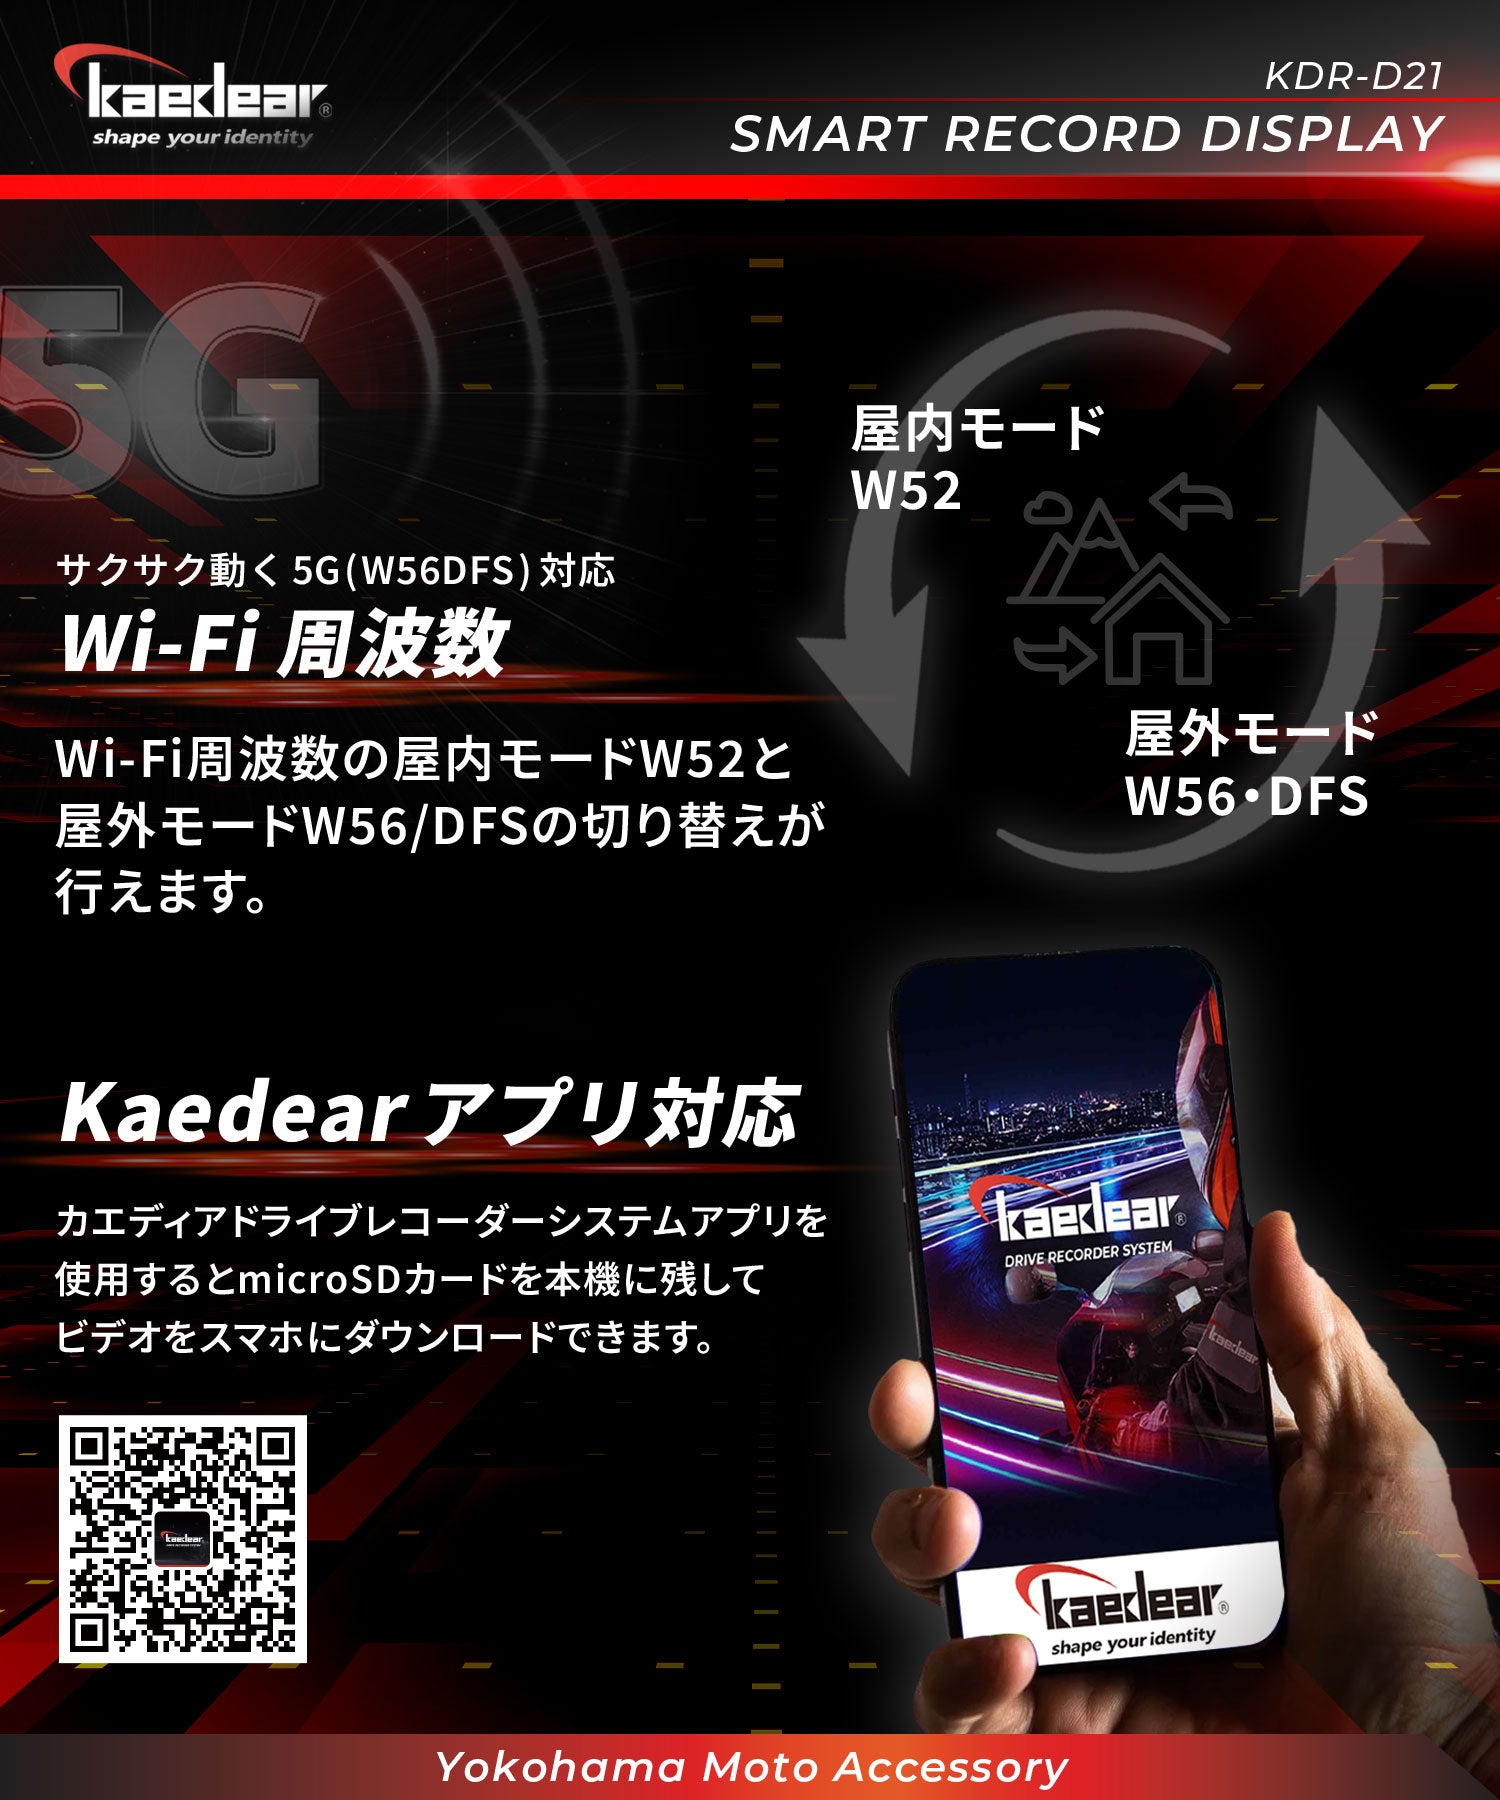 スマートレコードディスプレイ KDR-D21 – 株式会社Kaedear【カエディア 